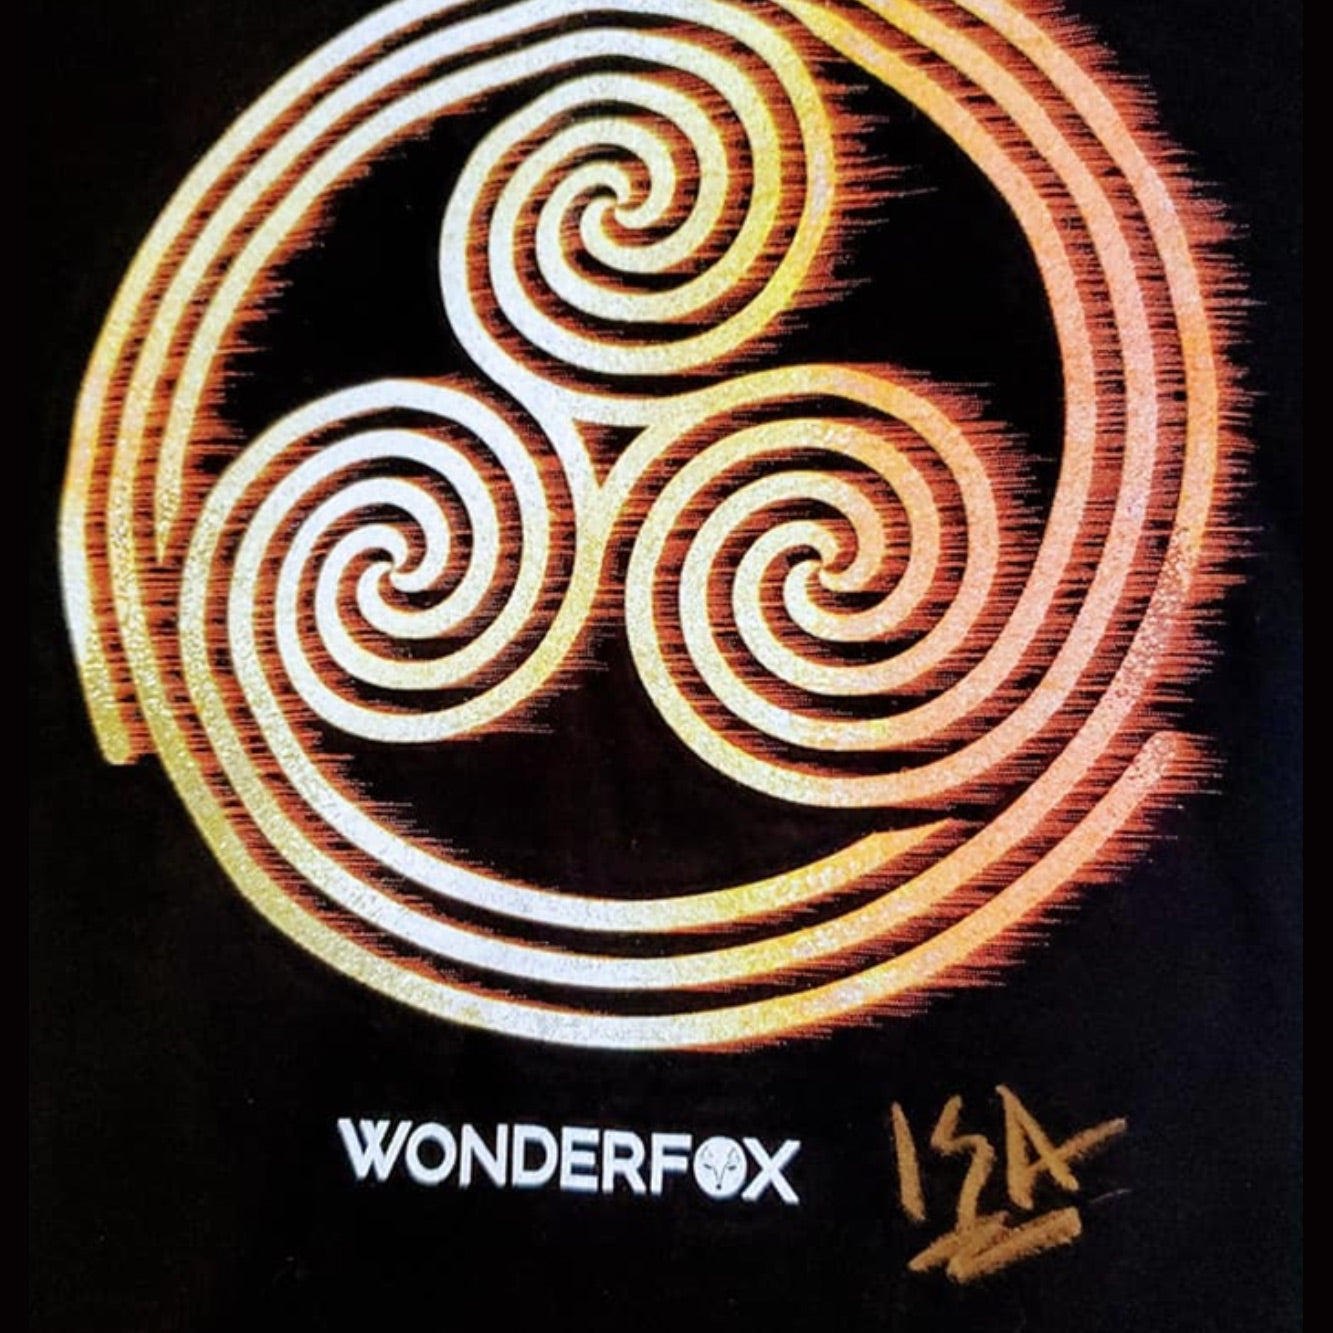 Wonderfox - Signed tee shirt